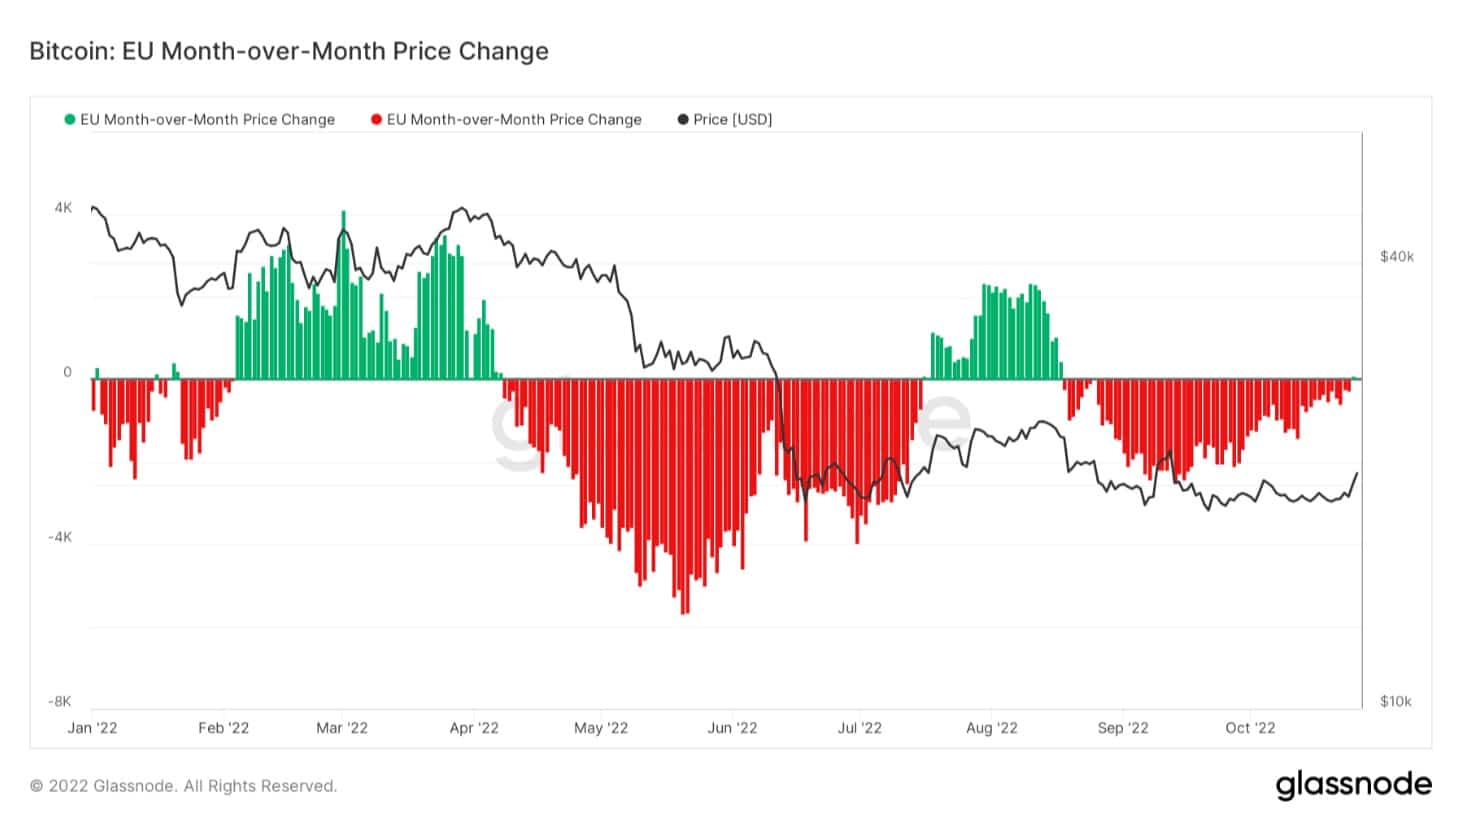 Grafiek met de E.U. MoM prijsverandering voor Bitcoin (Bron: Glassnode)